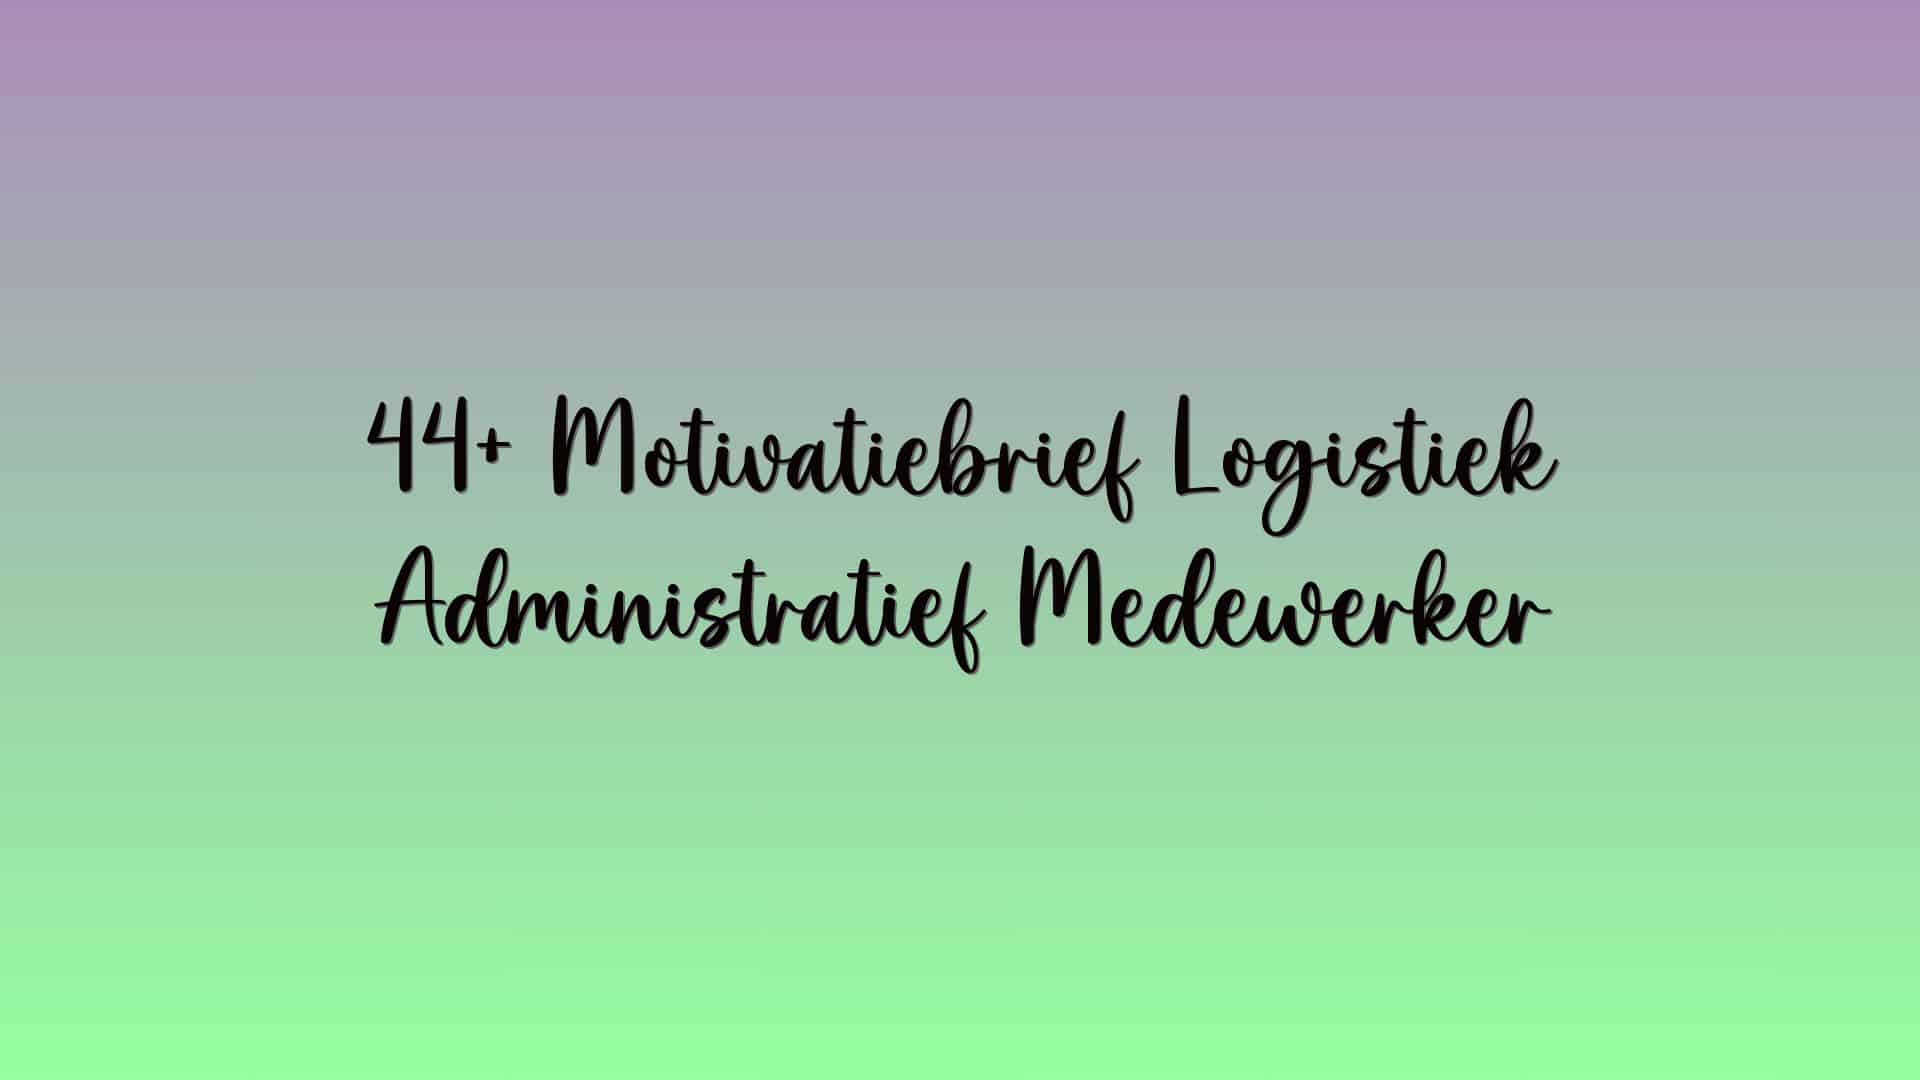 44+ Motivatiebrief Logistiek Administratief Medewerker